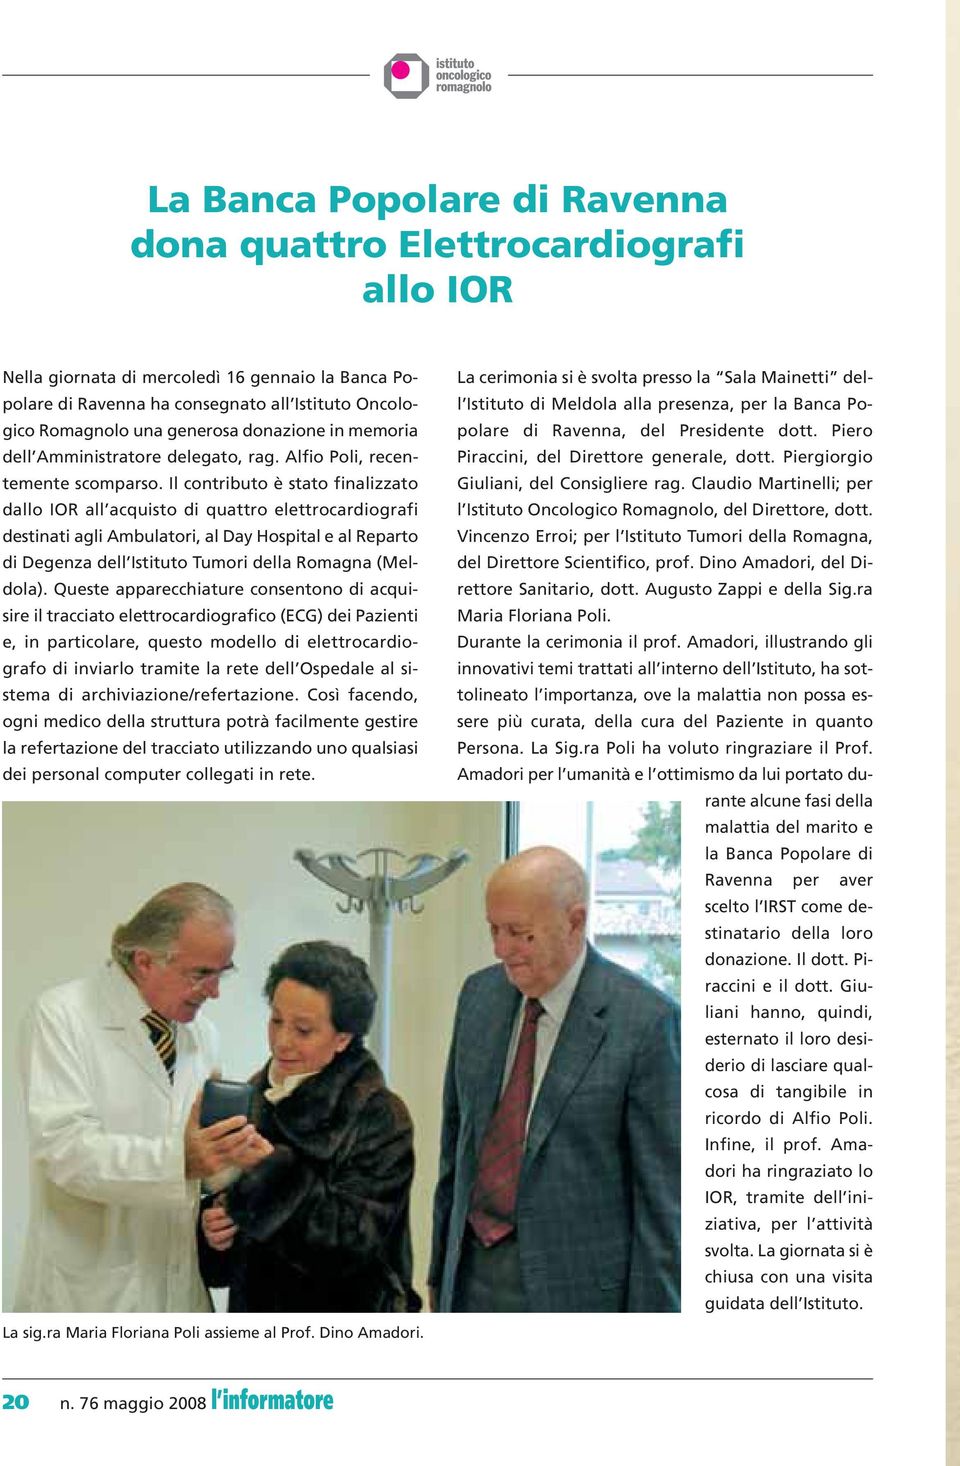 Il contributo è stato finalizzato dallo IOR all acquisto di quattro elettrocardiografi destinati agli Ambulatori, al Day Hospital e al Reparto di Degenza dell Istituto Tumori della Romagna (Meldola).